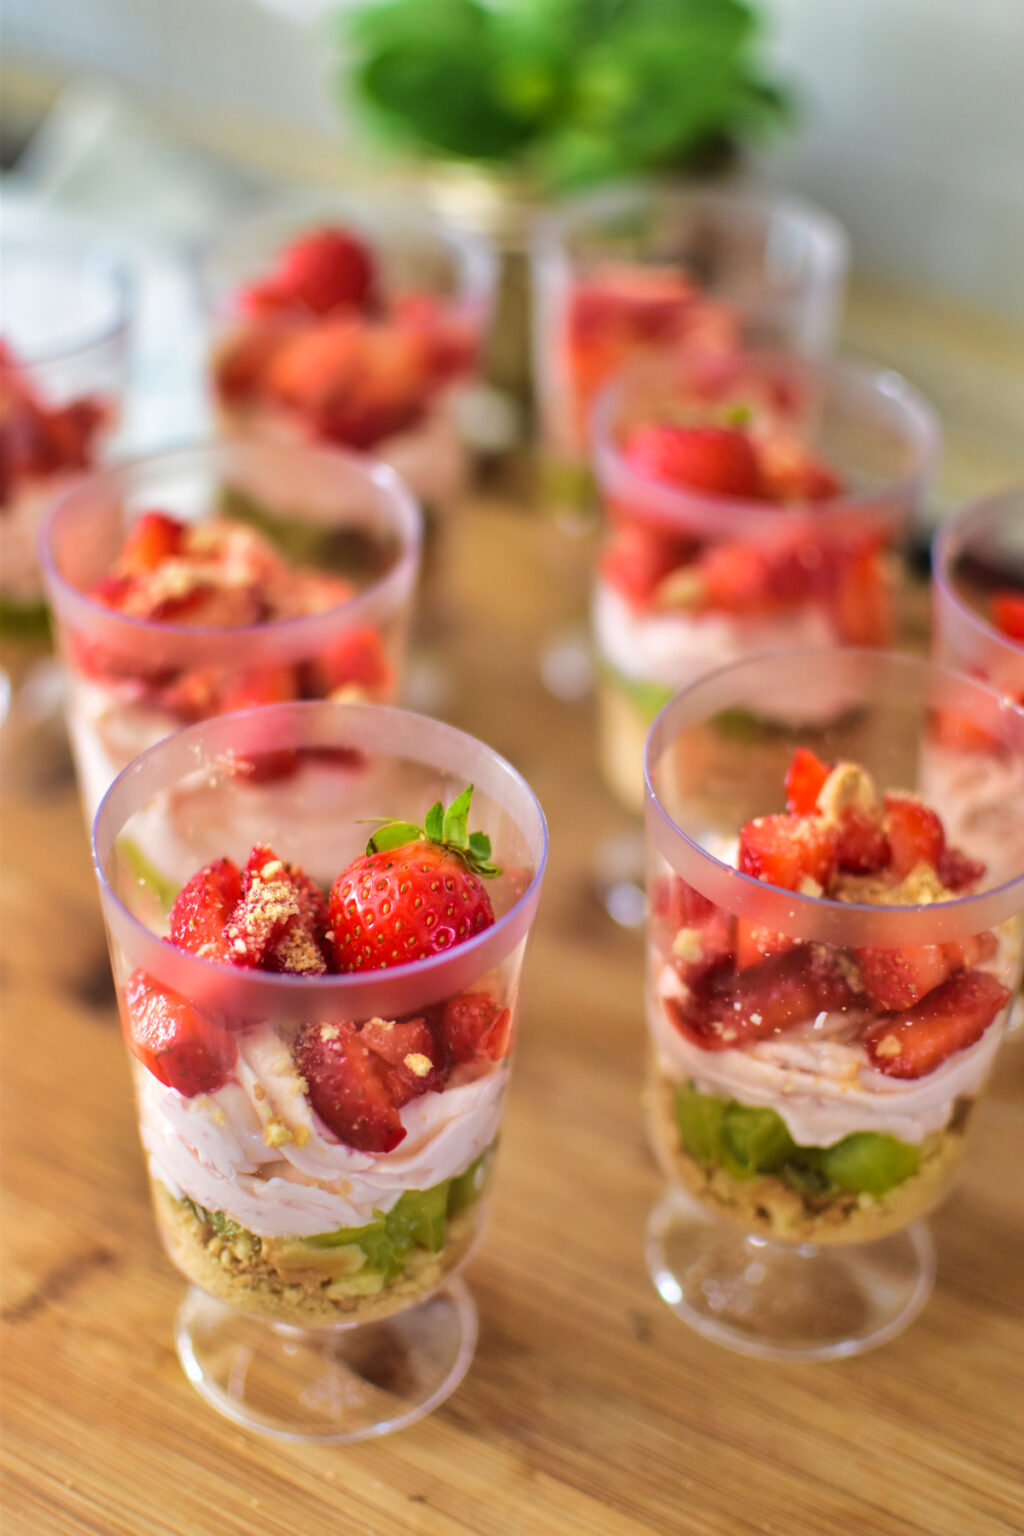 Schnelles Erdbeer-Kiwi Dessert « Hauptsache-Lecker